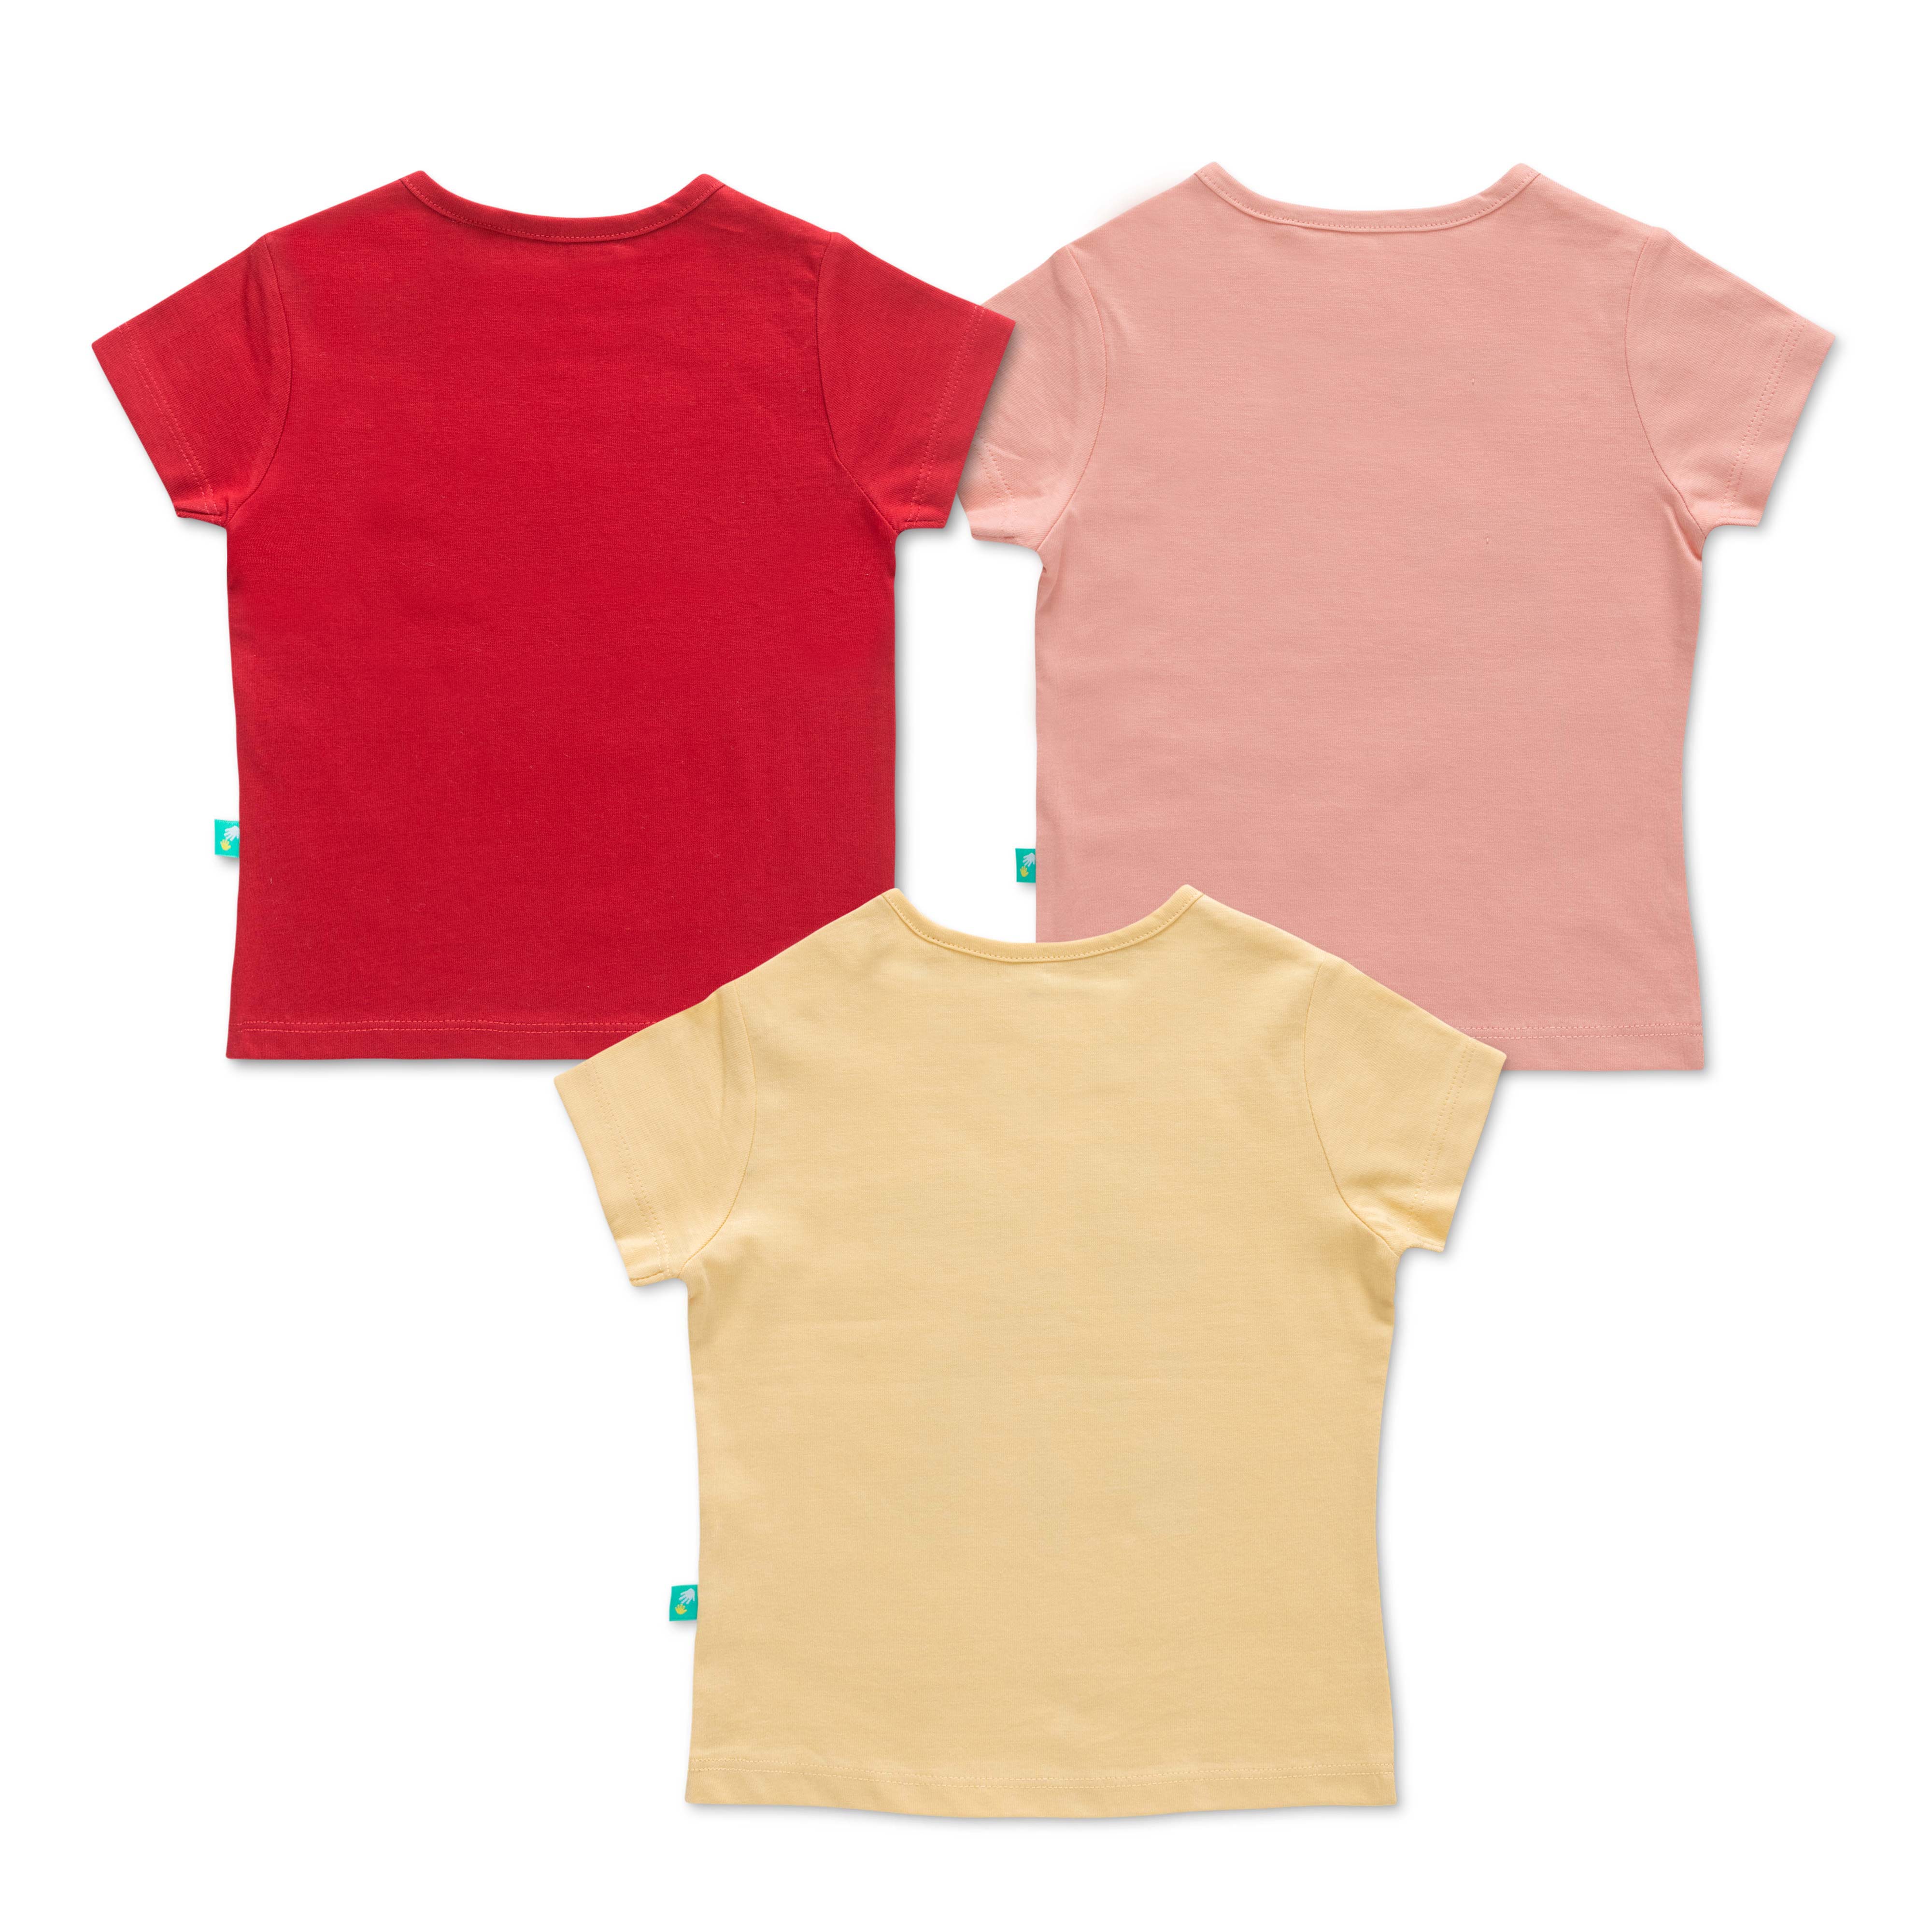 Infant Girls Half Sleeves Printed Tee Pack of 3